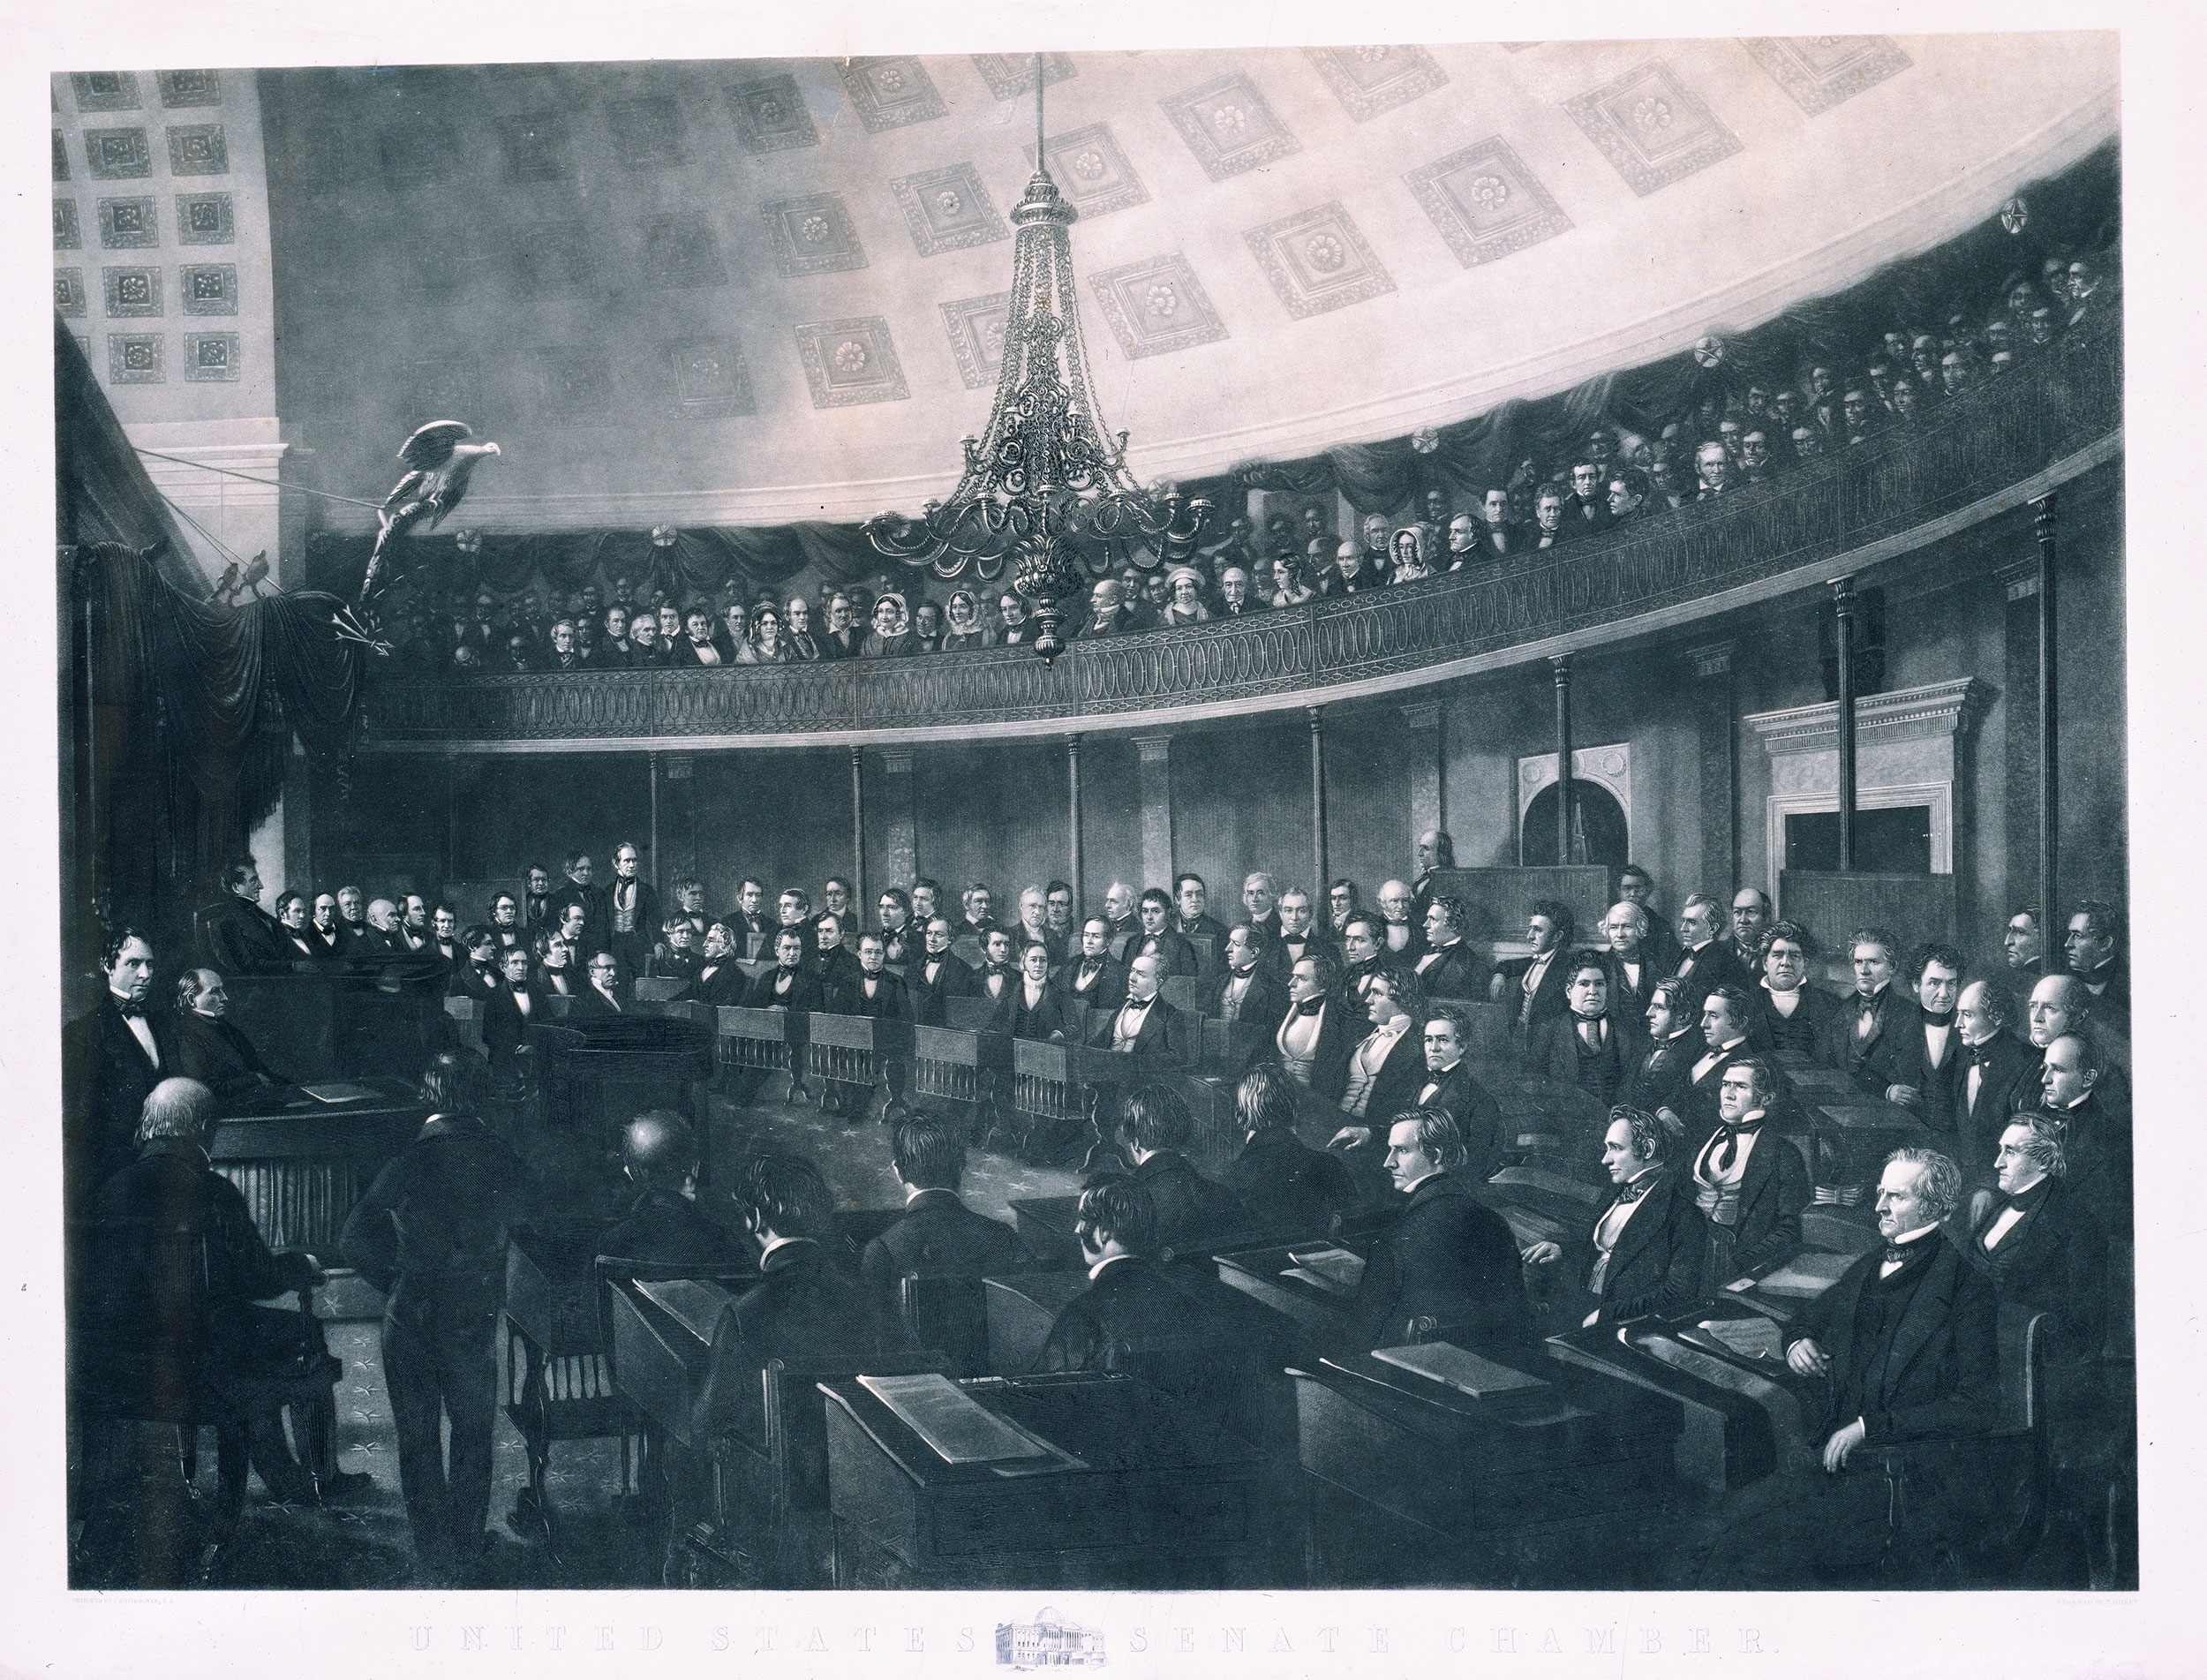 United States Senate Chamber. (Acc. No. 38.00027.001)